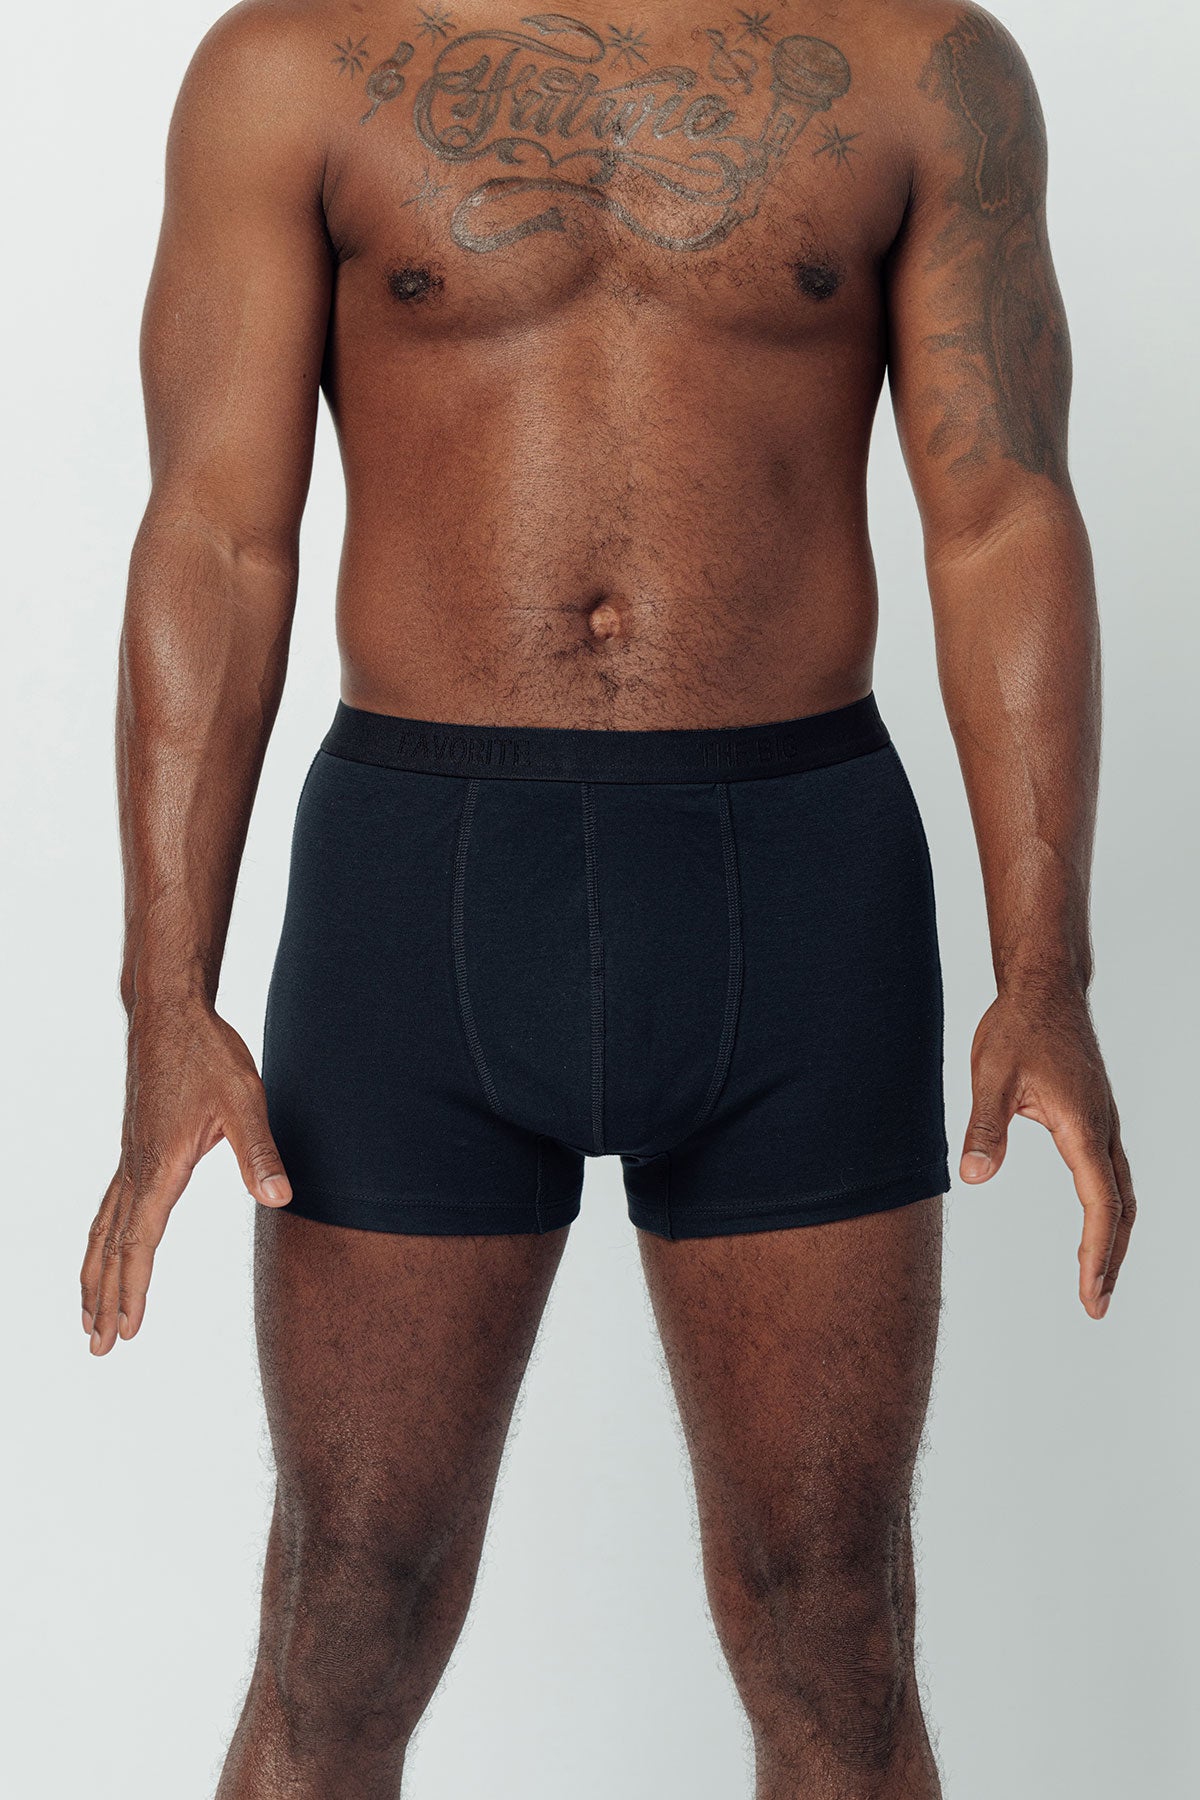 100% Organic Cotton Boxer Briefs Mens Underwear Natural Soft